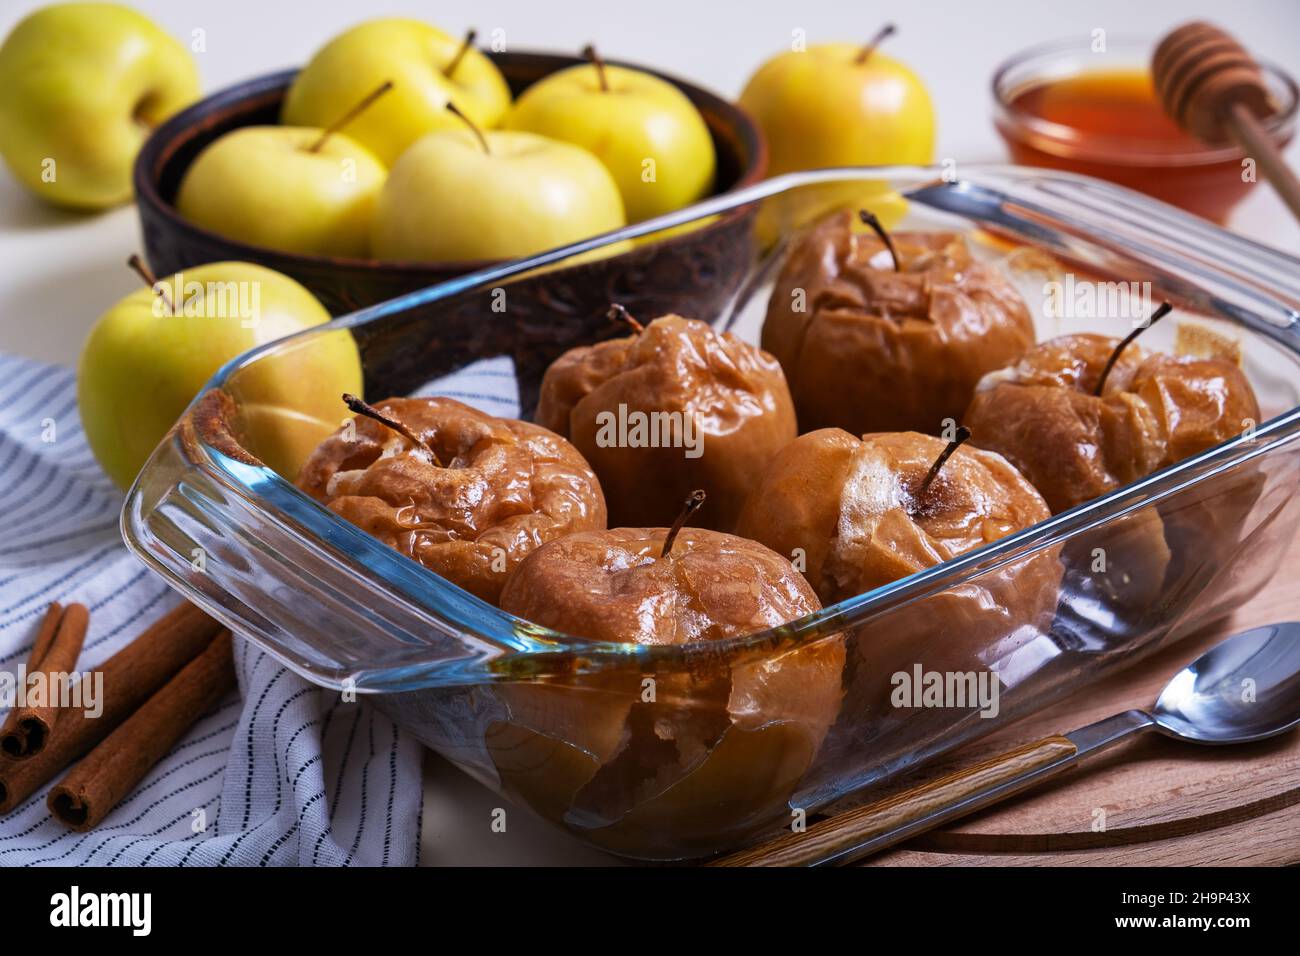 Las manzanas caramelizadas horneadas con miel en un recipiente refractario de cristal se colocan sobre la mesa entre las manzanas amarillas. Enfoque selectivo. Foto de stock